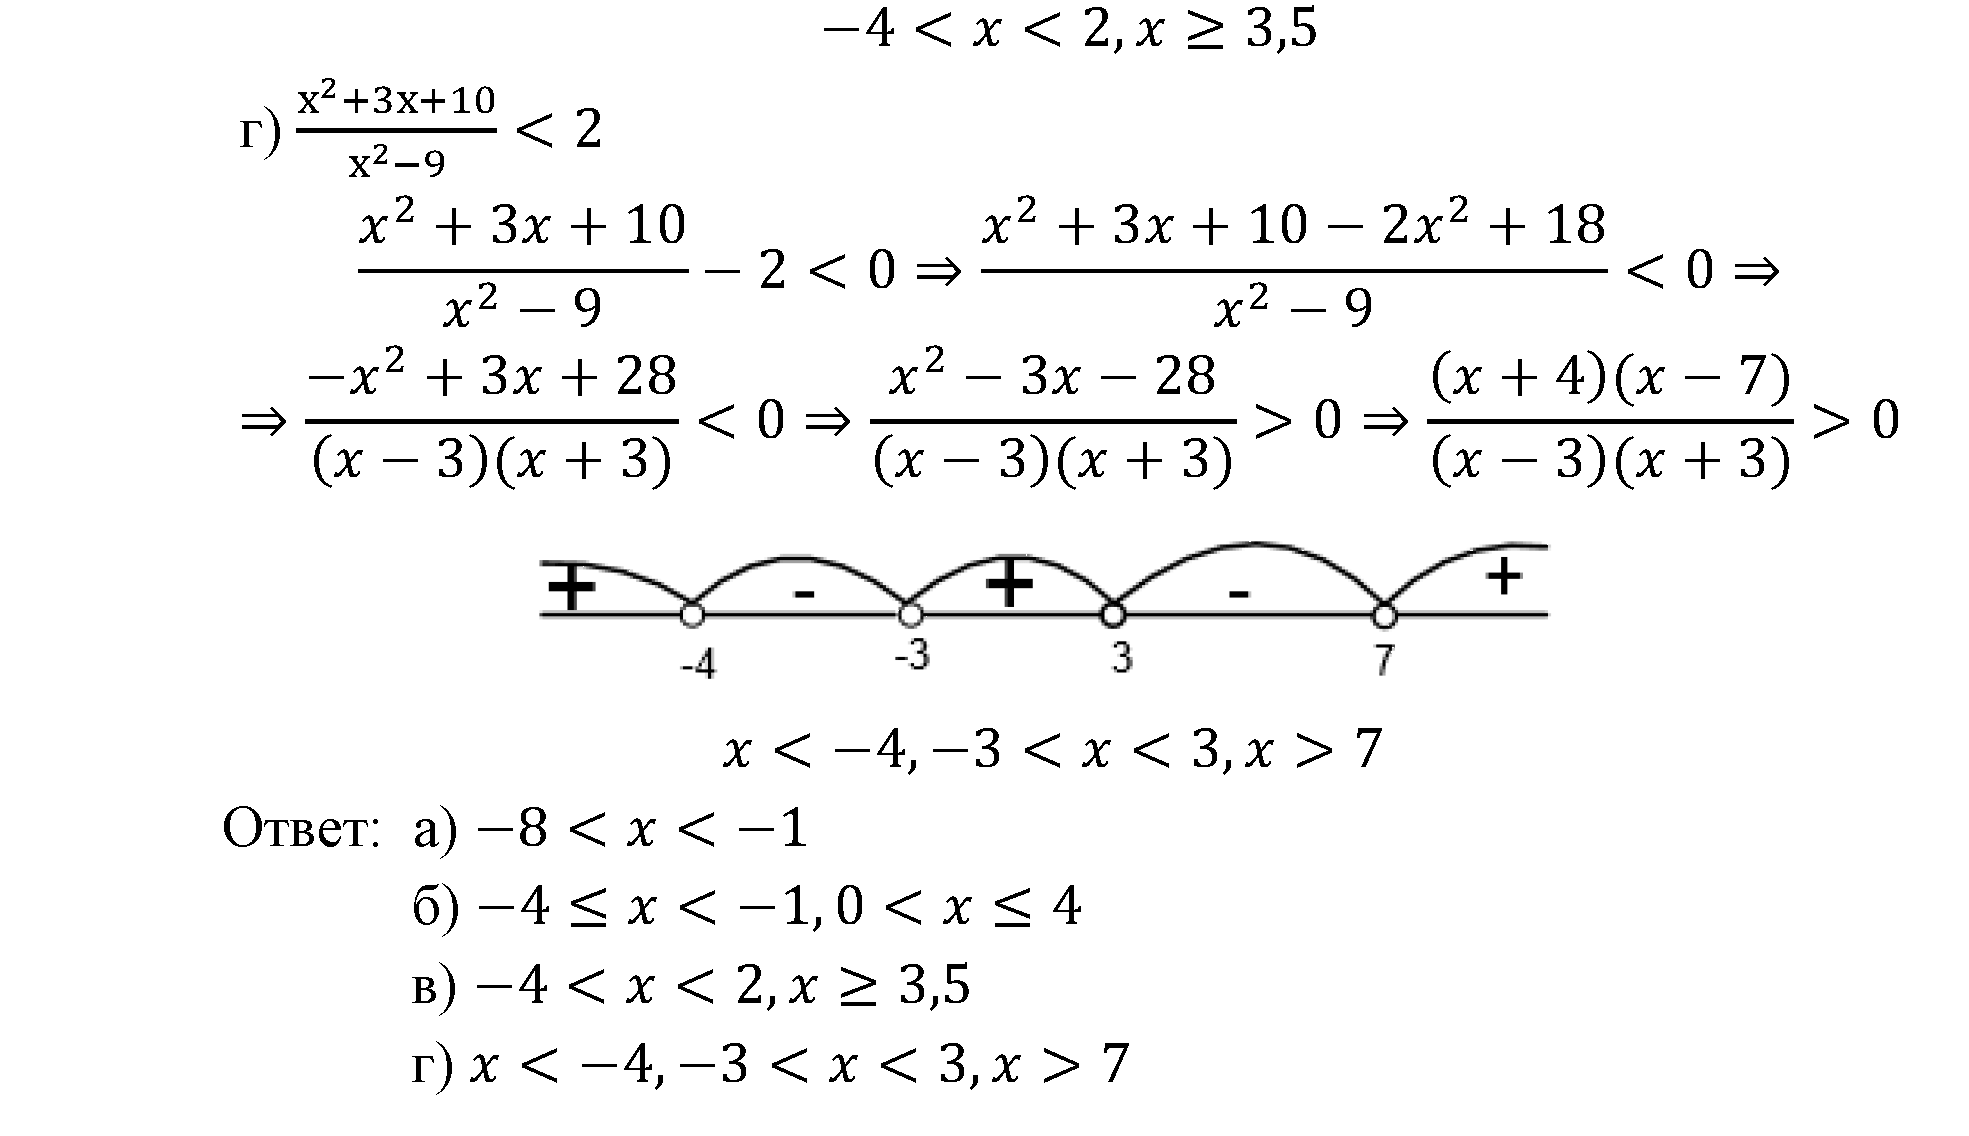 страница 19 задача 2.25 алгебра 9 класс Мордкович 2010 год